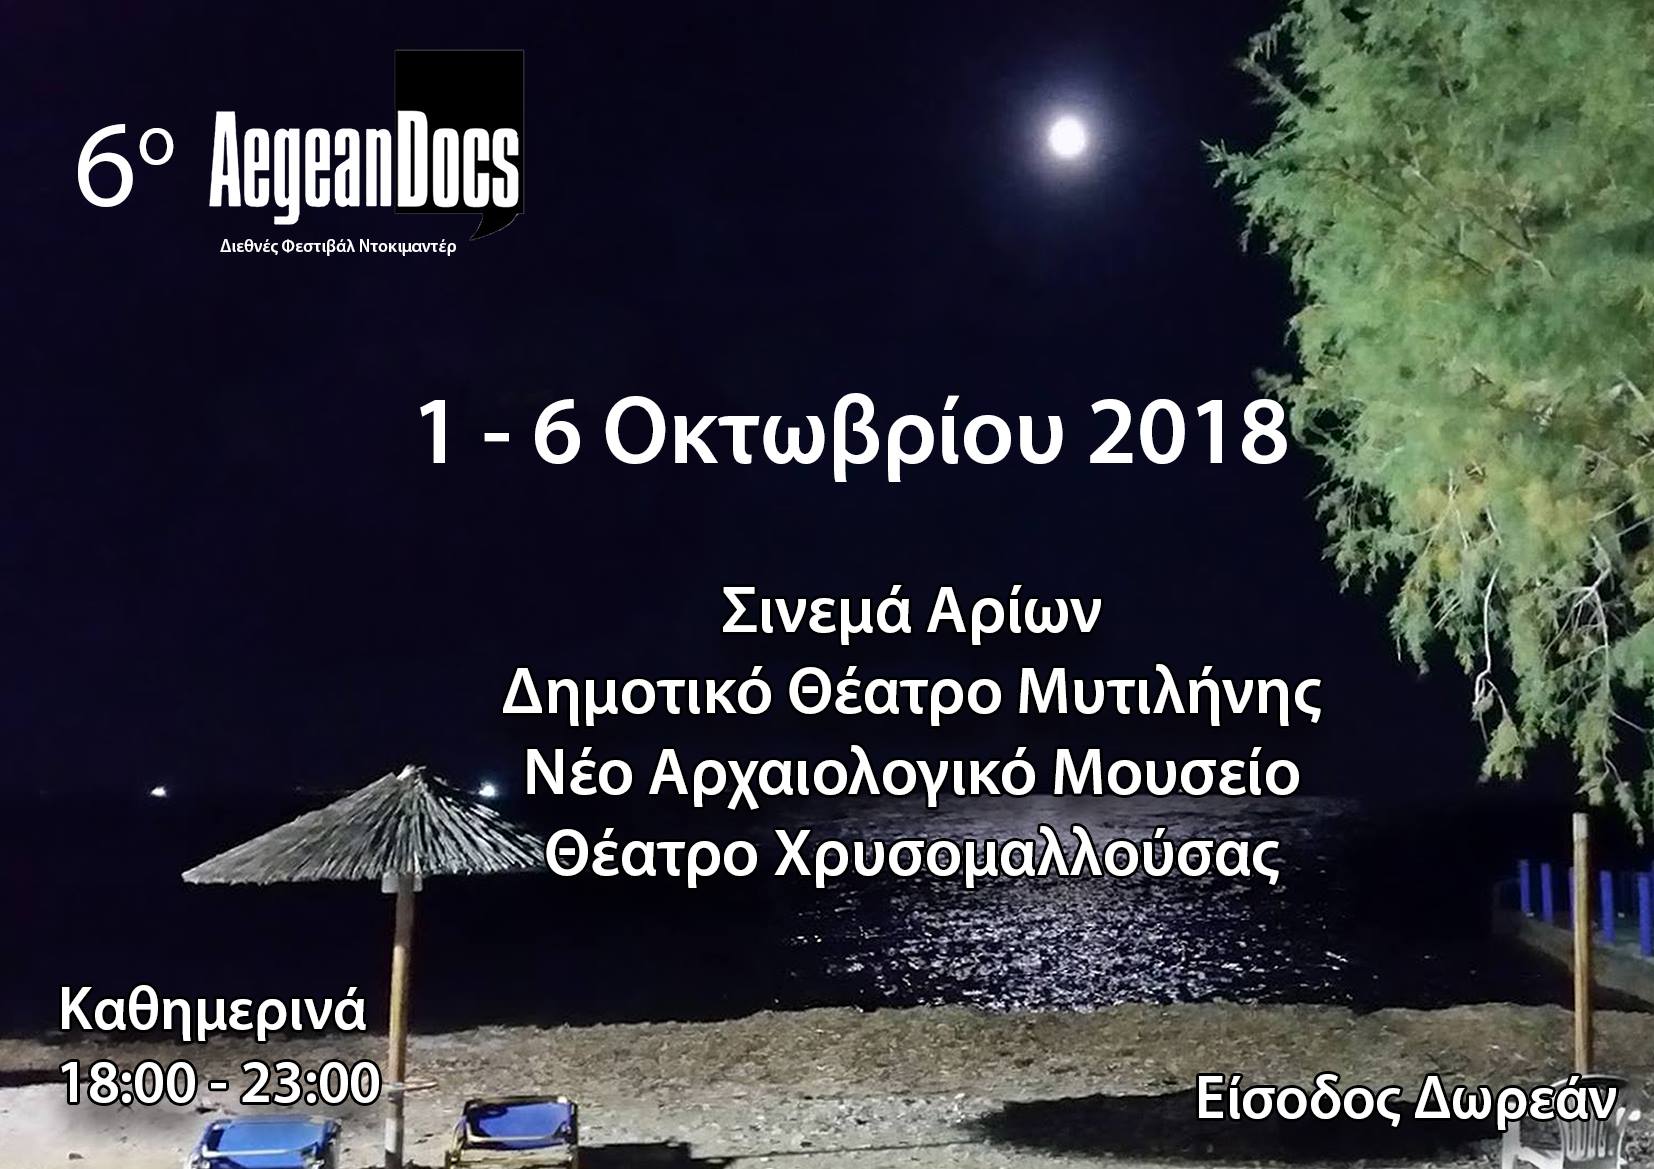 Αυλαία σήμερα για το AegeanDocs 2018